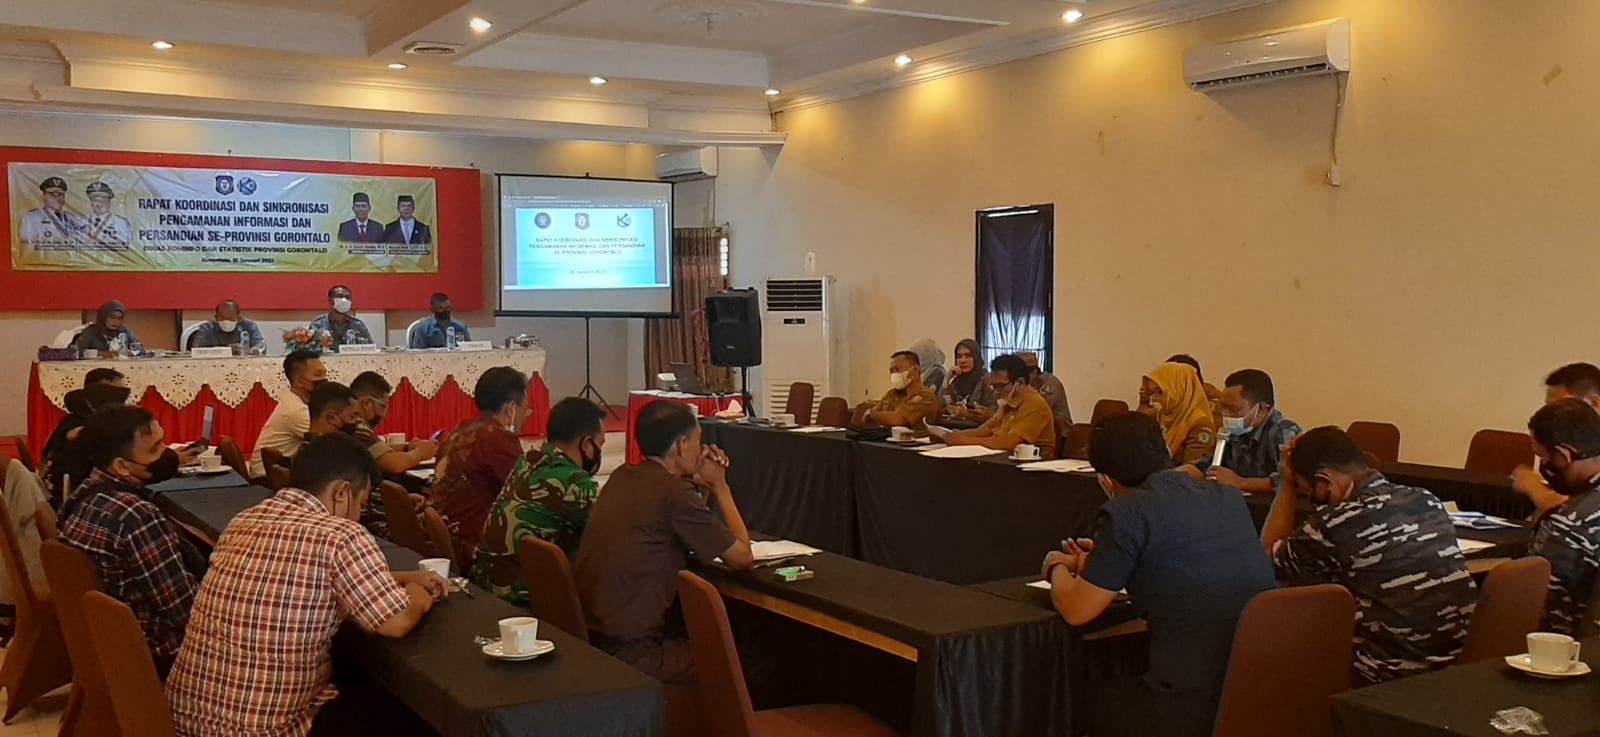 Diskominfotik Gelar Rakor Sinkronisasi Pengamanan Informasi se Provinsi Gorontalo